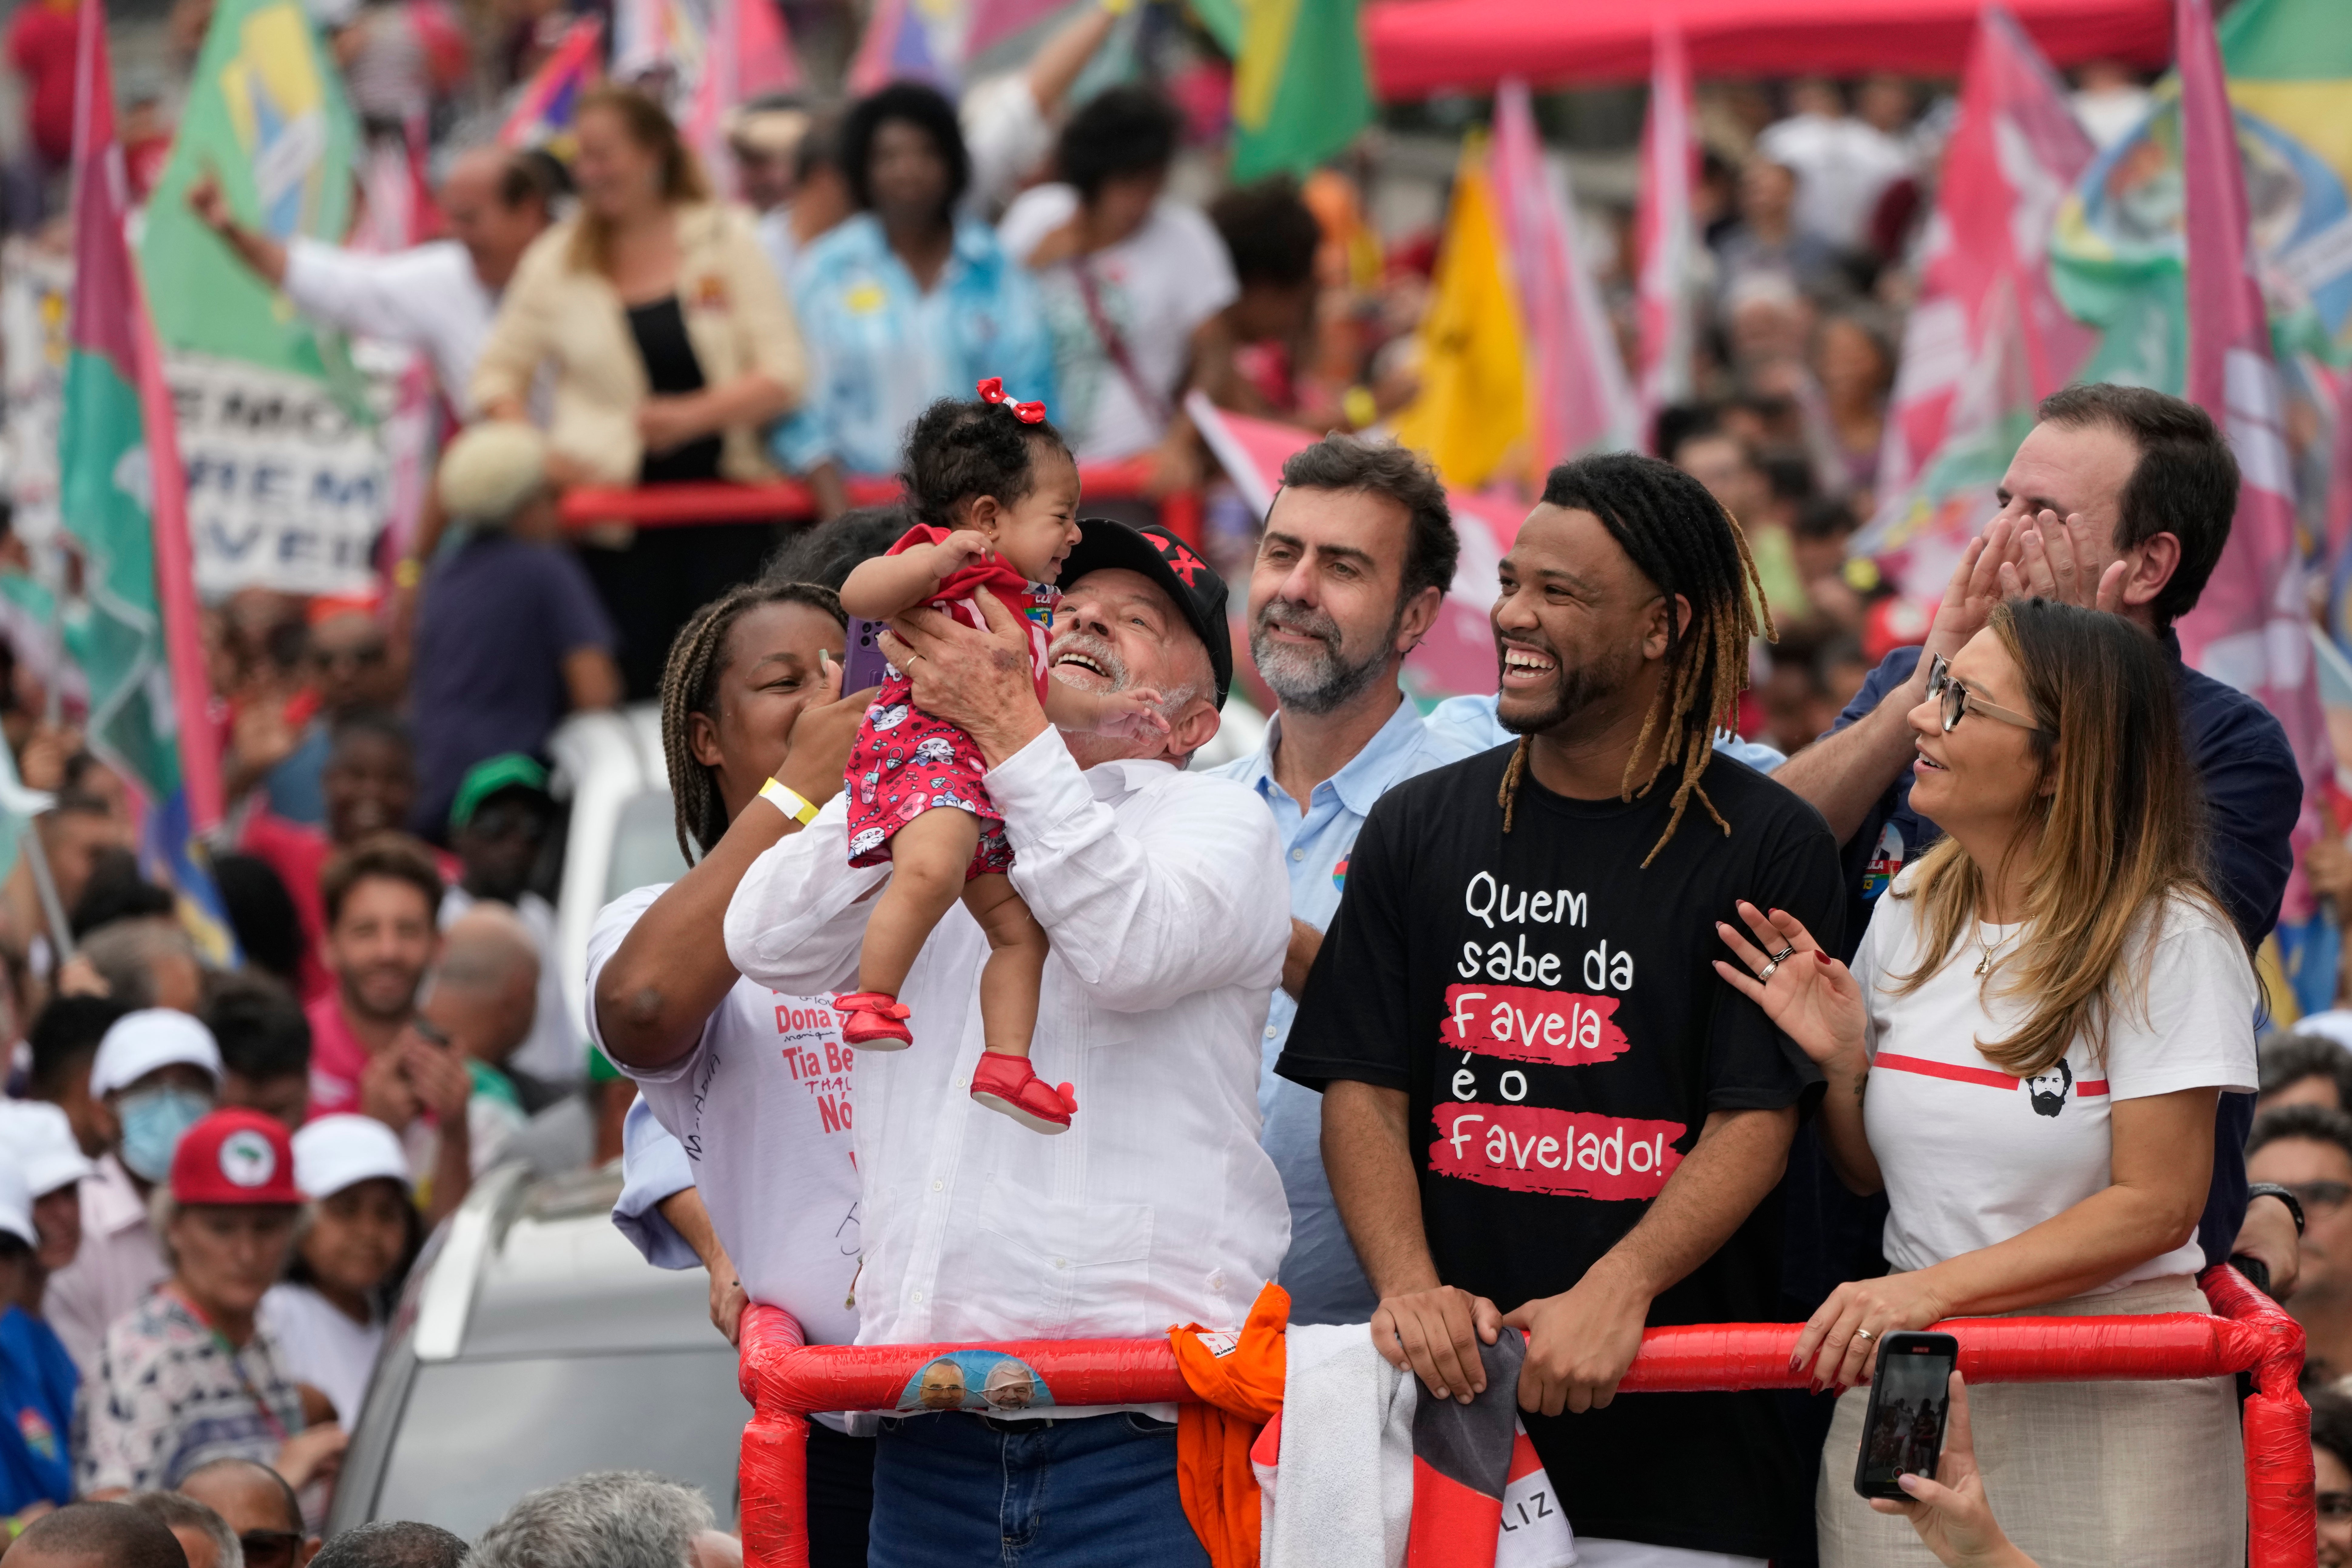 Las últimas encuestas de opinión indican que “Lula” sigue a la cabeza, aunque su ventaja se ha reducido bastante